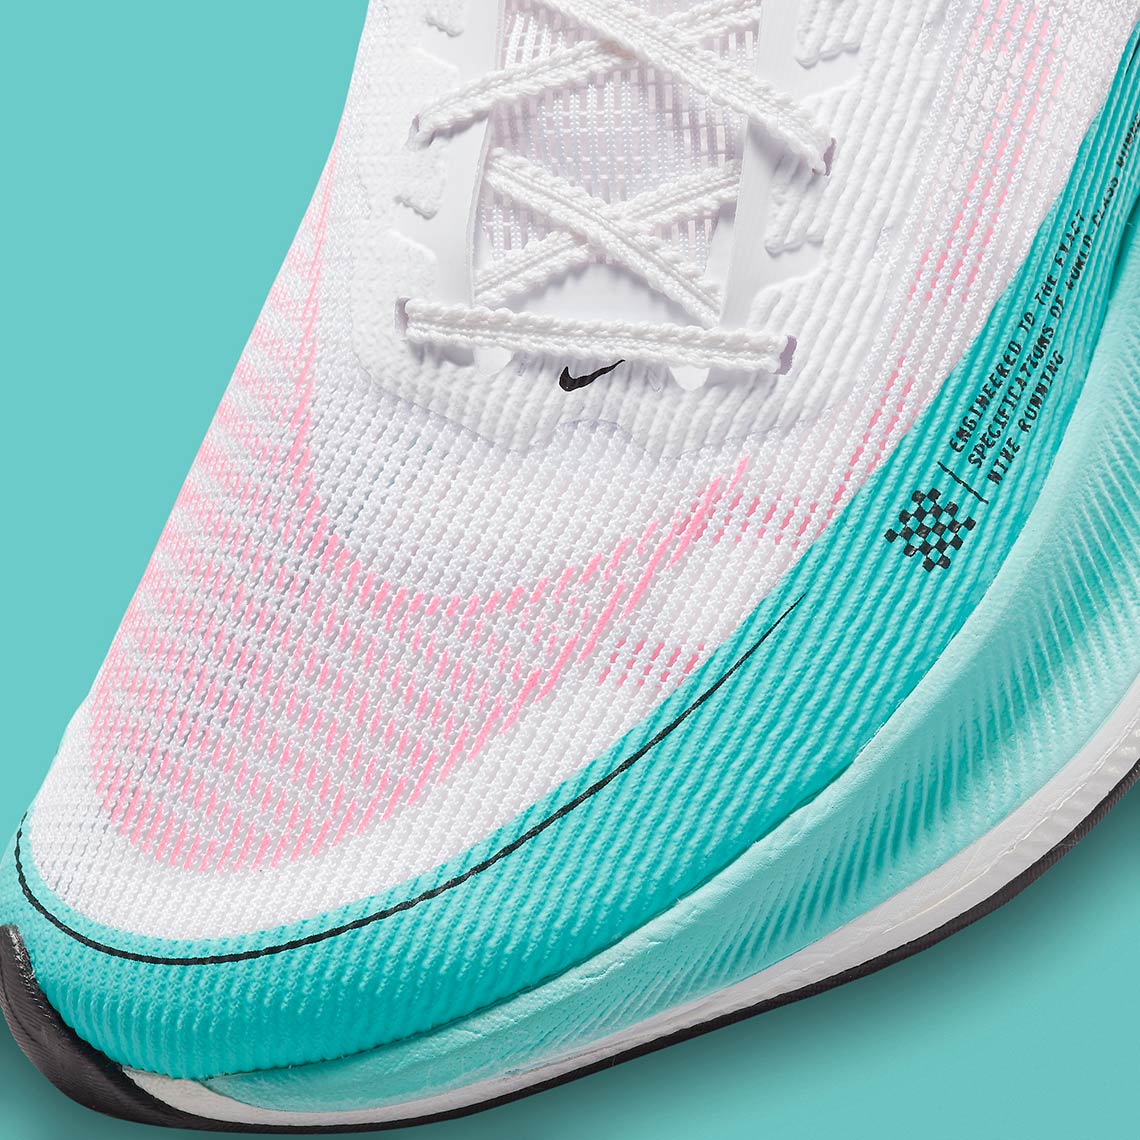 Nike ZoomX VaporFly Next 2 Watermelon CU4111-101 | SneakerNews.com